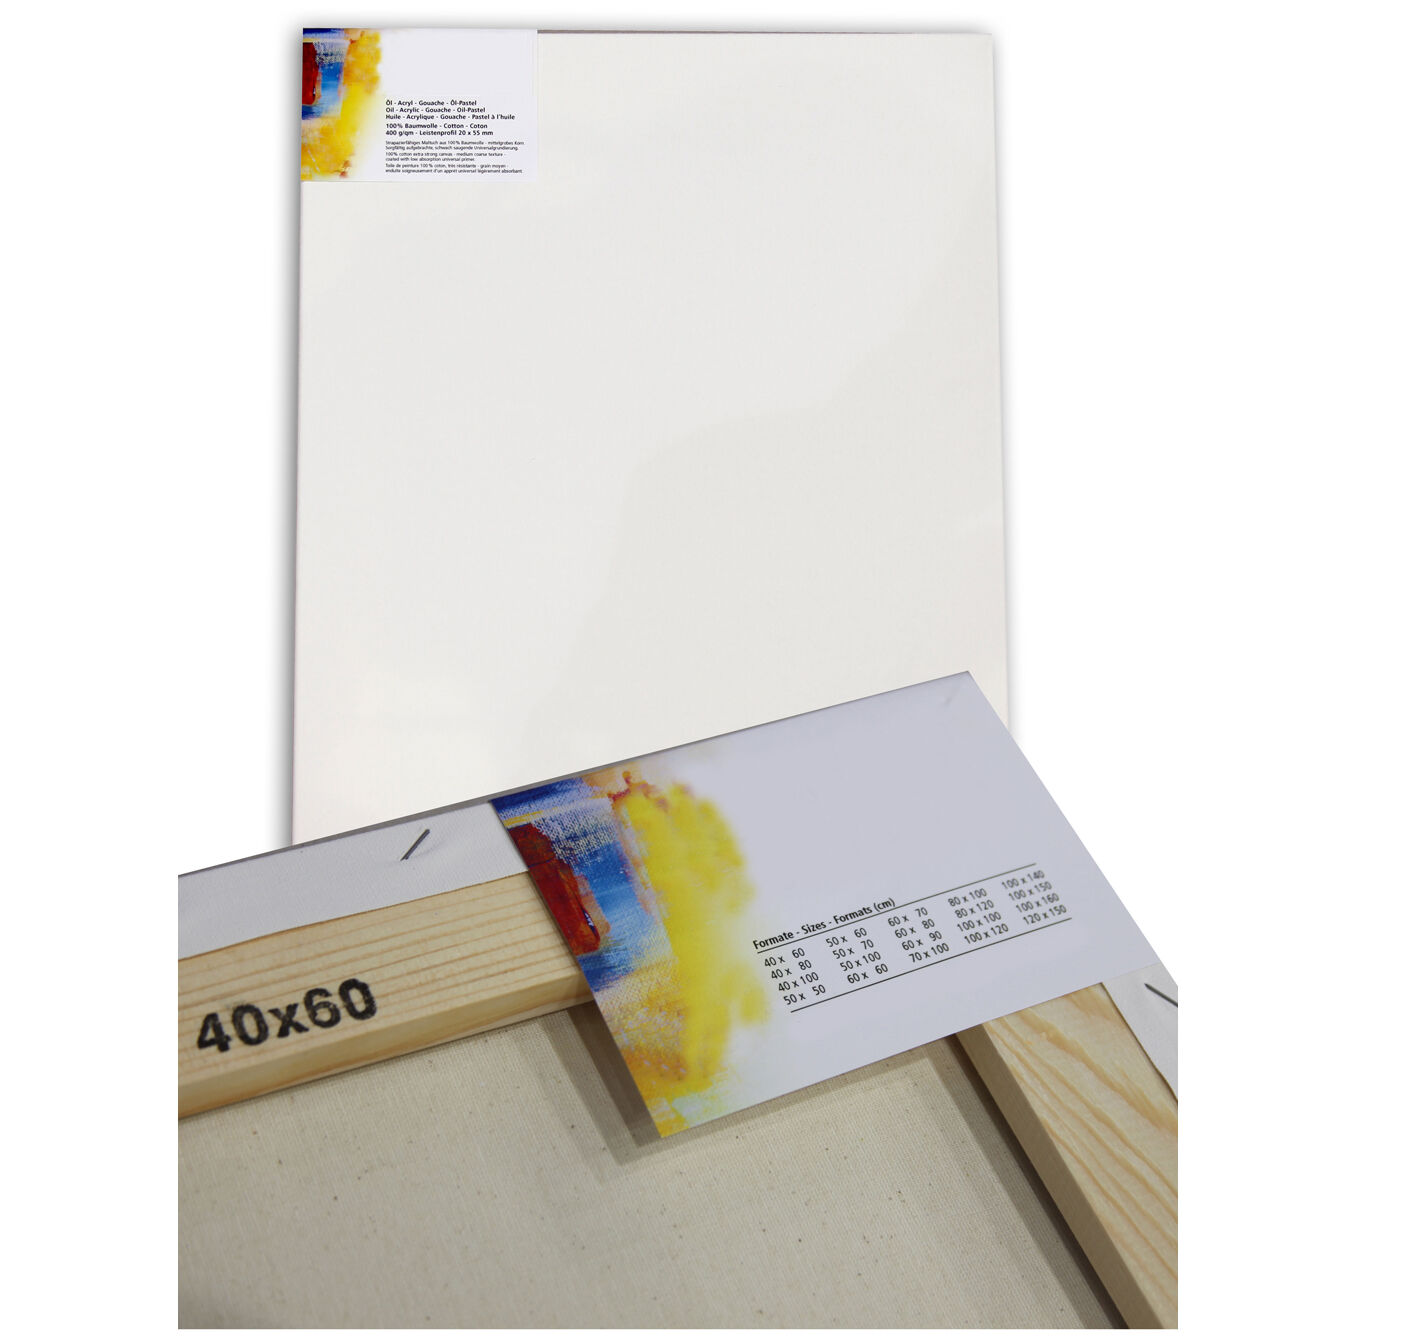 NEU Cotton 400 Premium-Keilrahmen Professionell 20mm Leistenstärke, 20 x 30 cm - 2 Stück Bild 2